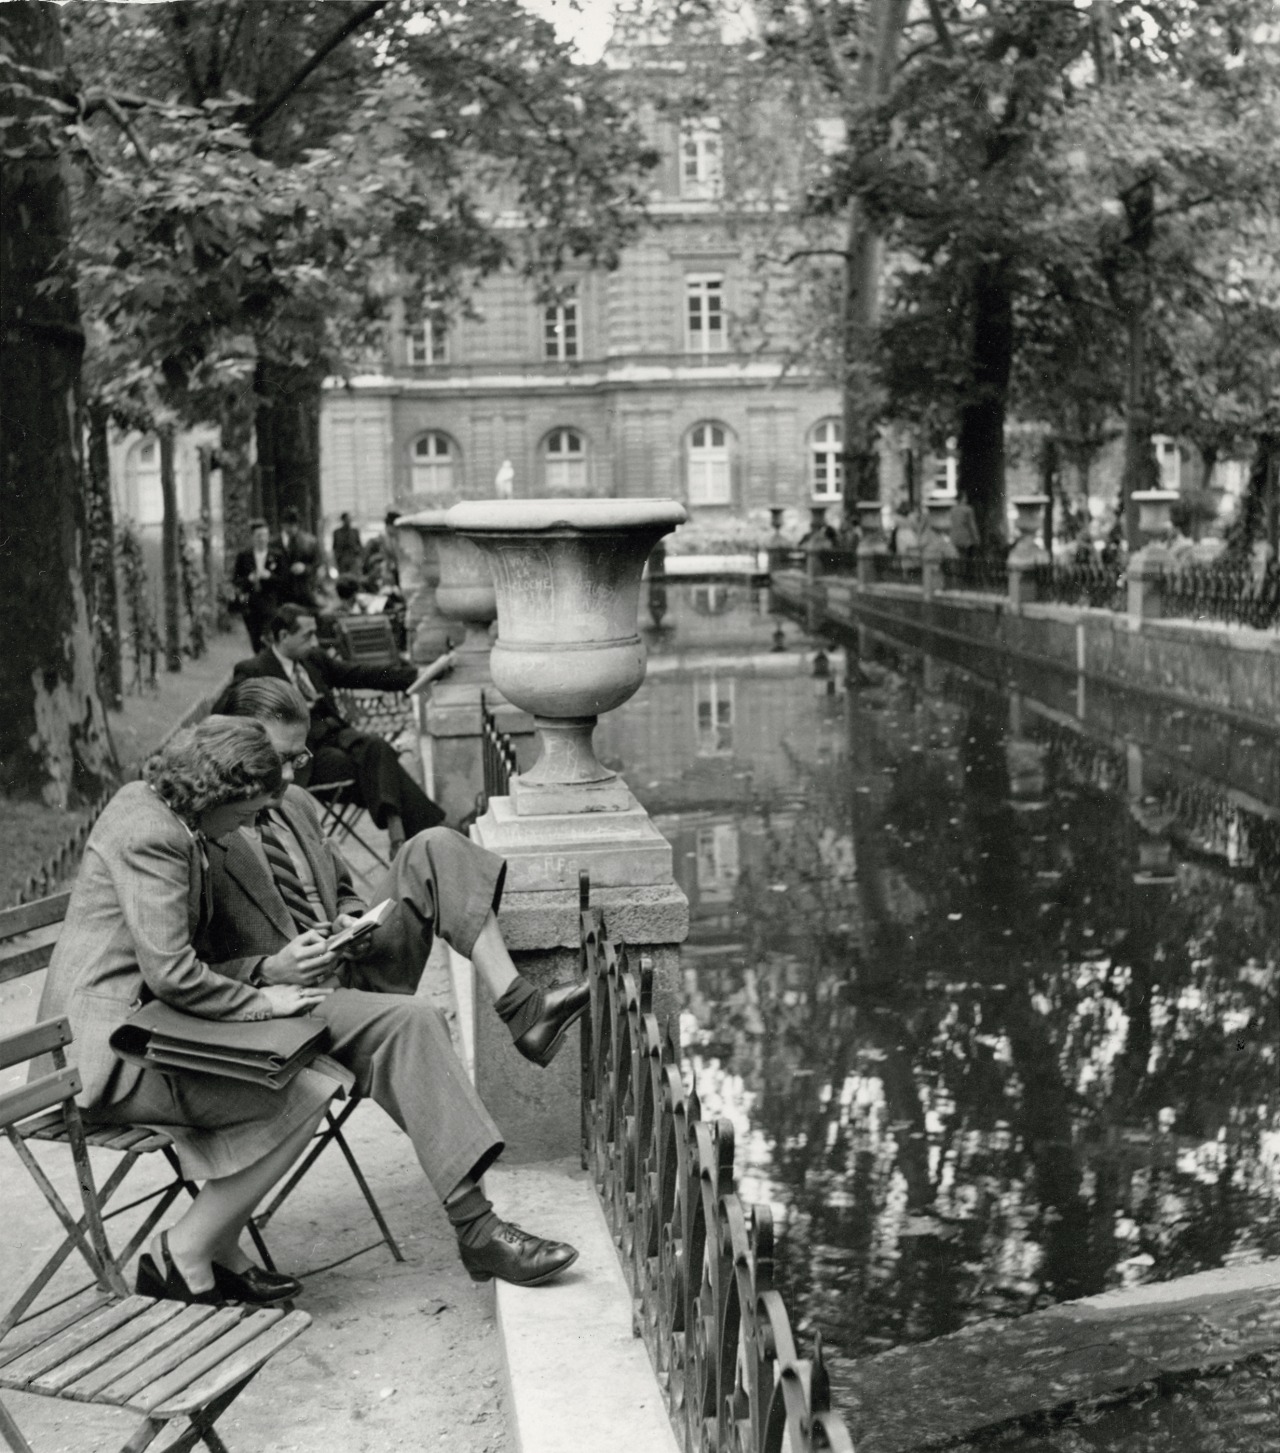 Medici Fountain. Paris. 1948 - Photographer André Kertész.jpg